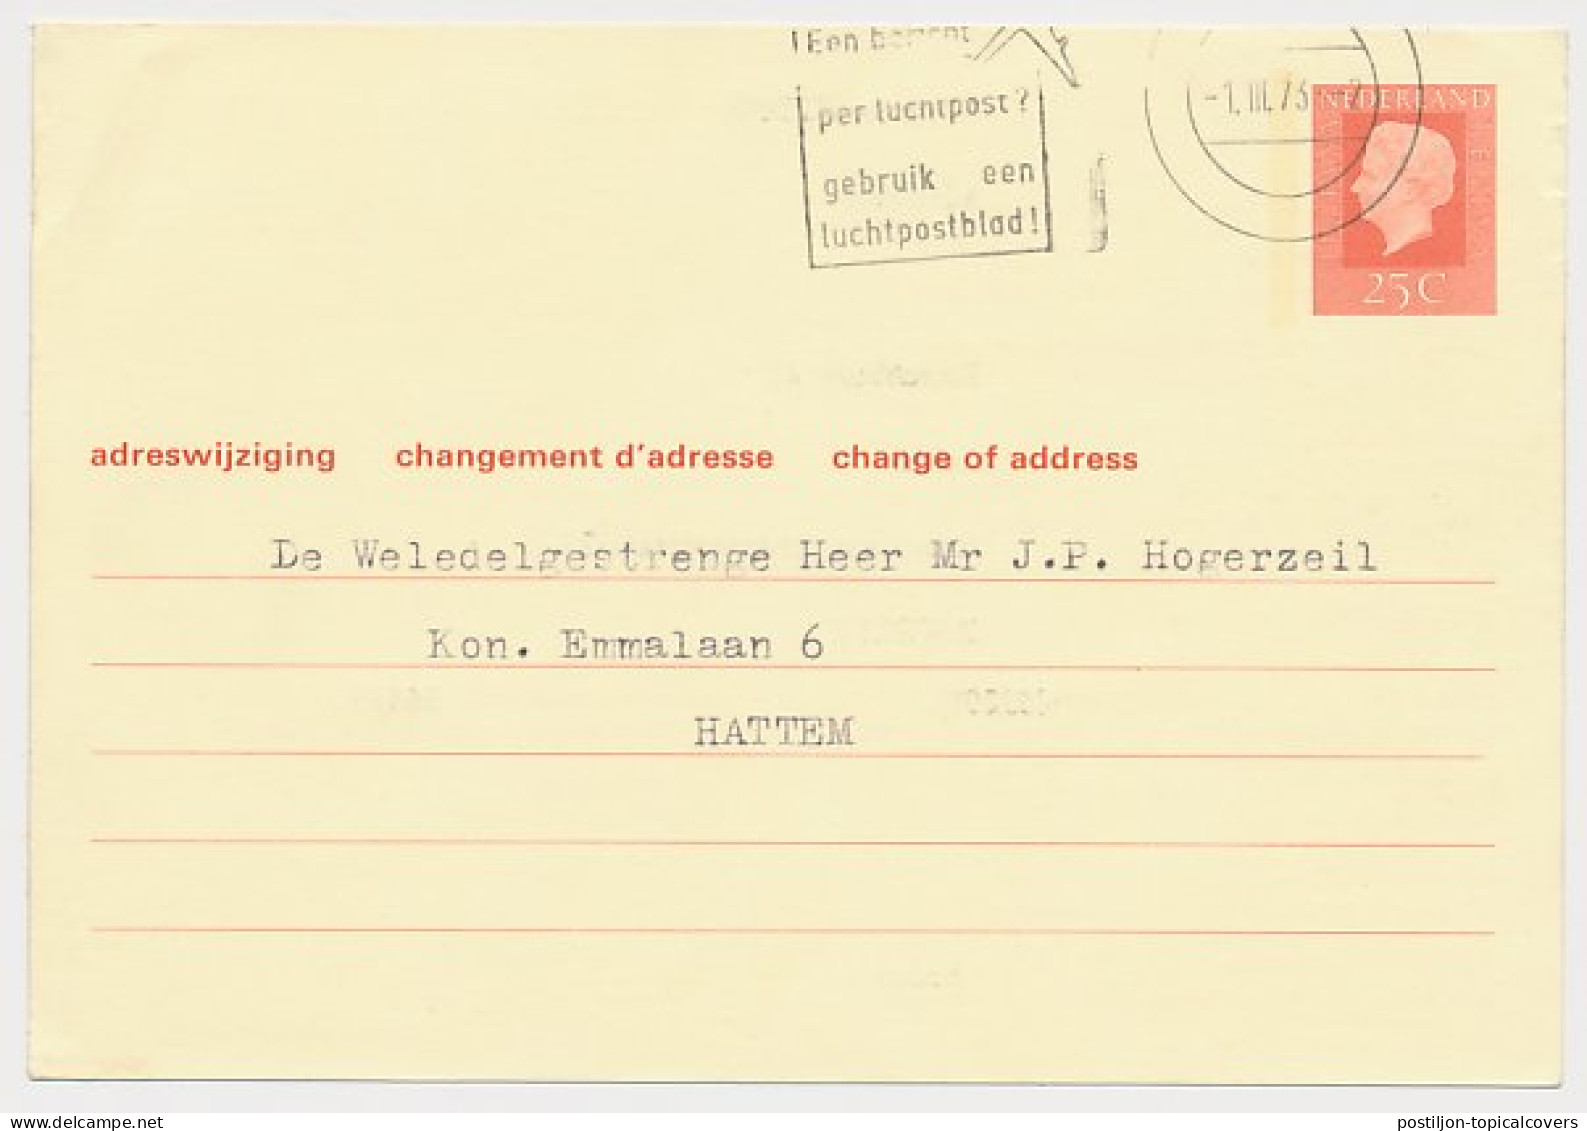 Verhuiskaart G. 38 Particulier Bedrukt Zwolle 1973 - Postwaardestukken